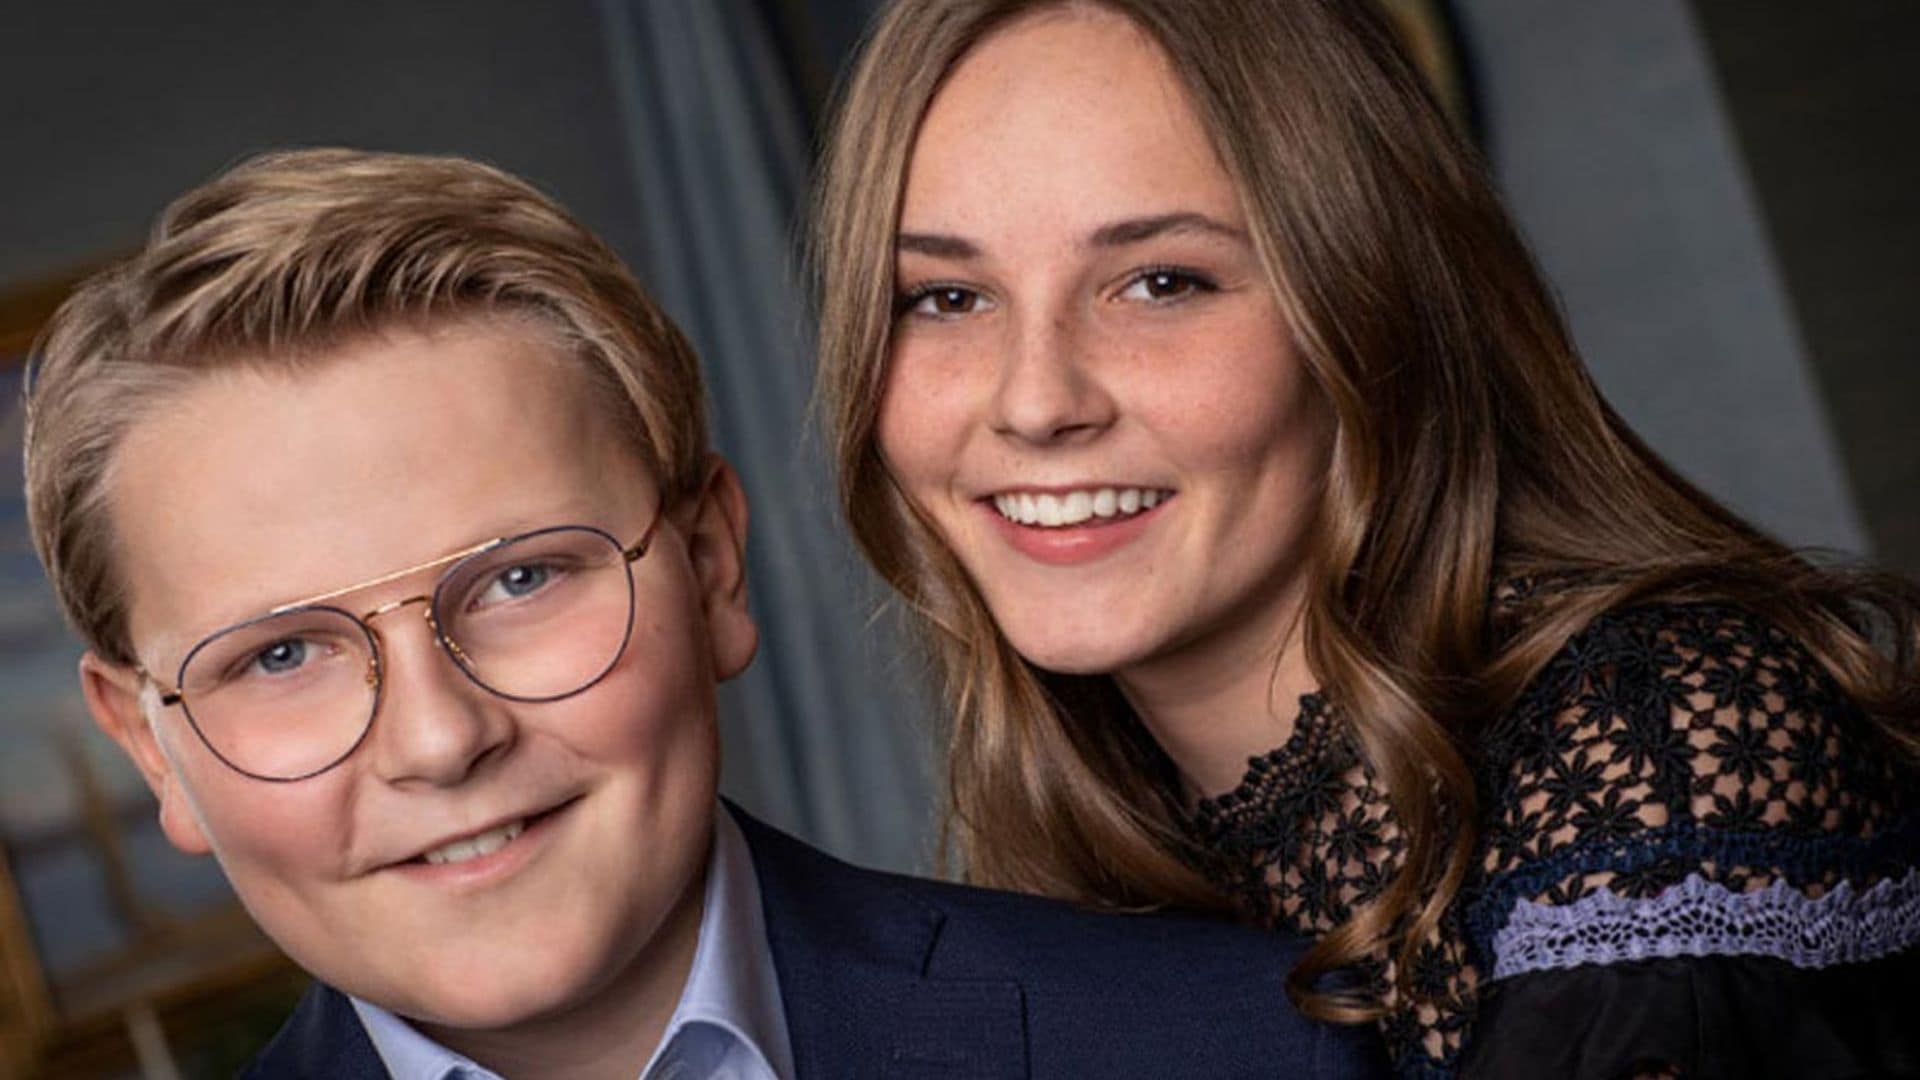 Tecnologías de la información y producción de medios, ¿la futura carrera de Sverre Magnus, hijo de Haakon y Mette-Marit de Noruega?